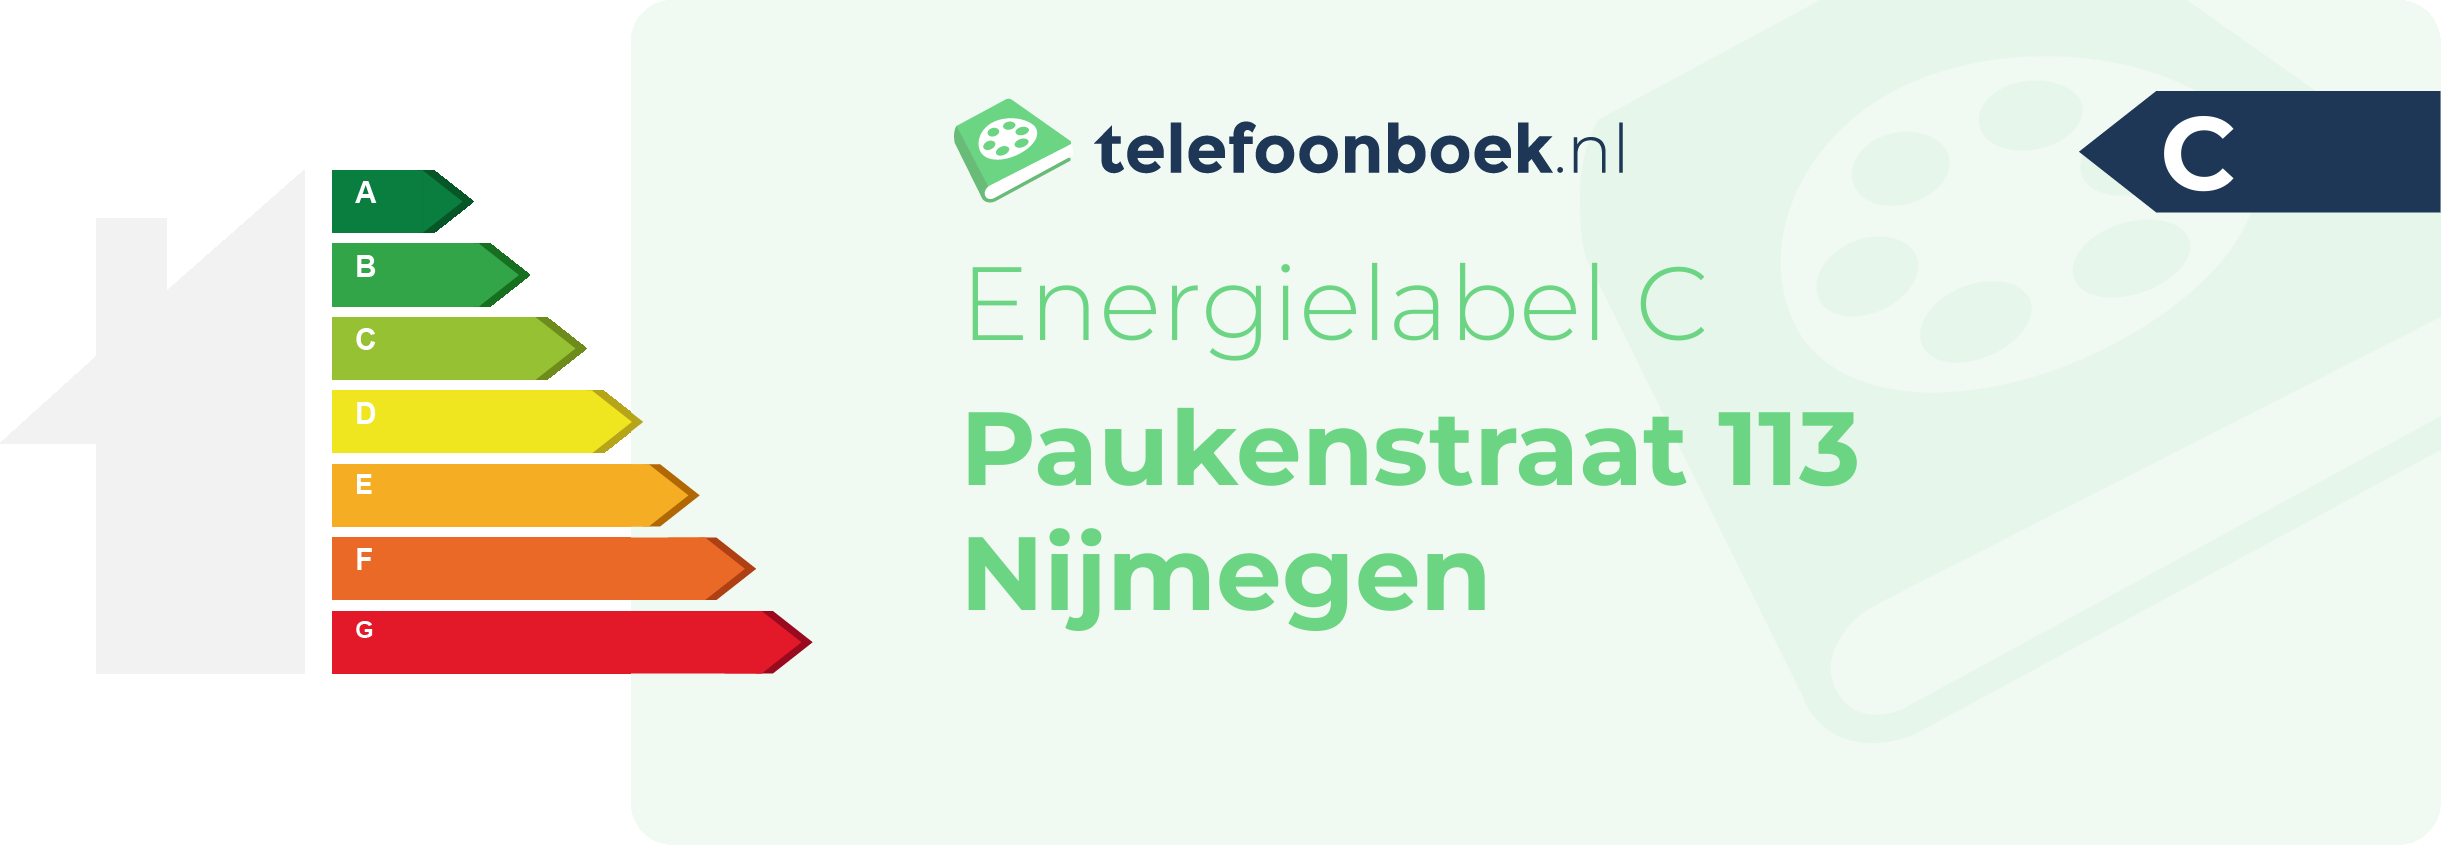 Energielabel Paukenstraat 113 Nijmegen